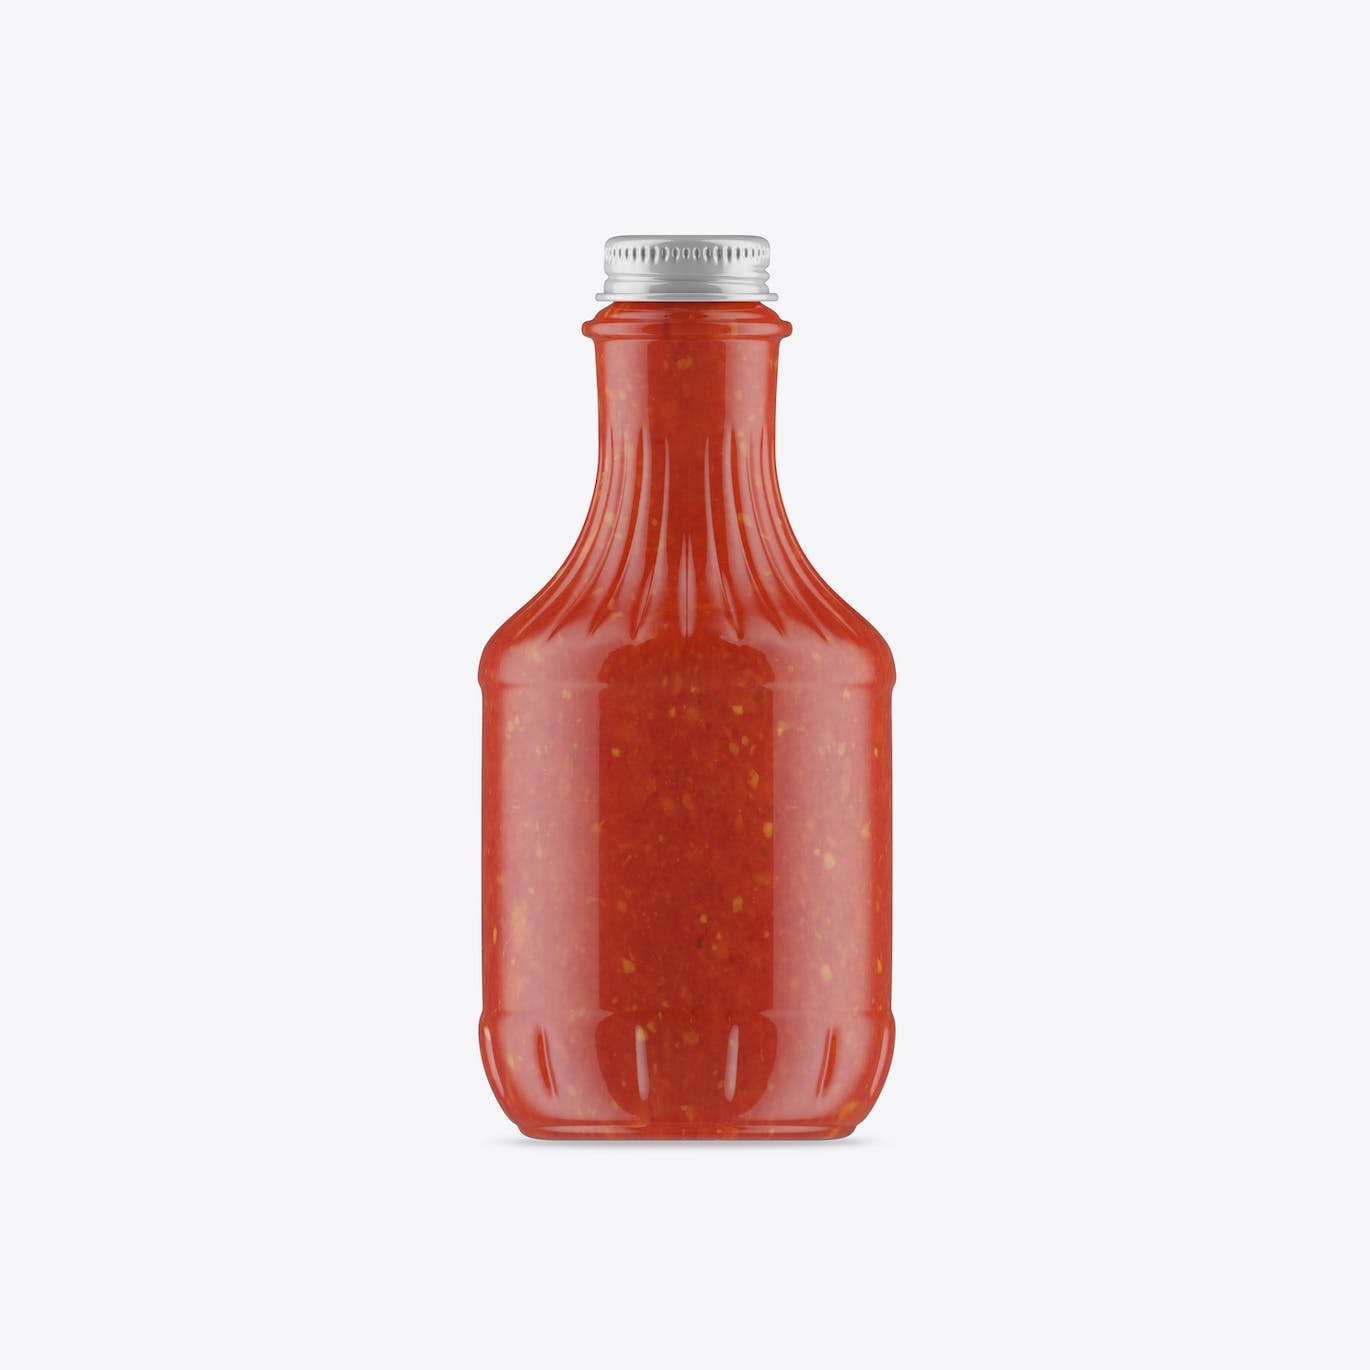 酱油瓶包装设计样机 Sauce Bottle Mockup 样机素材 第3张